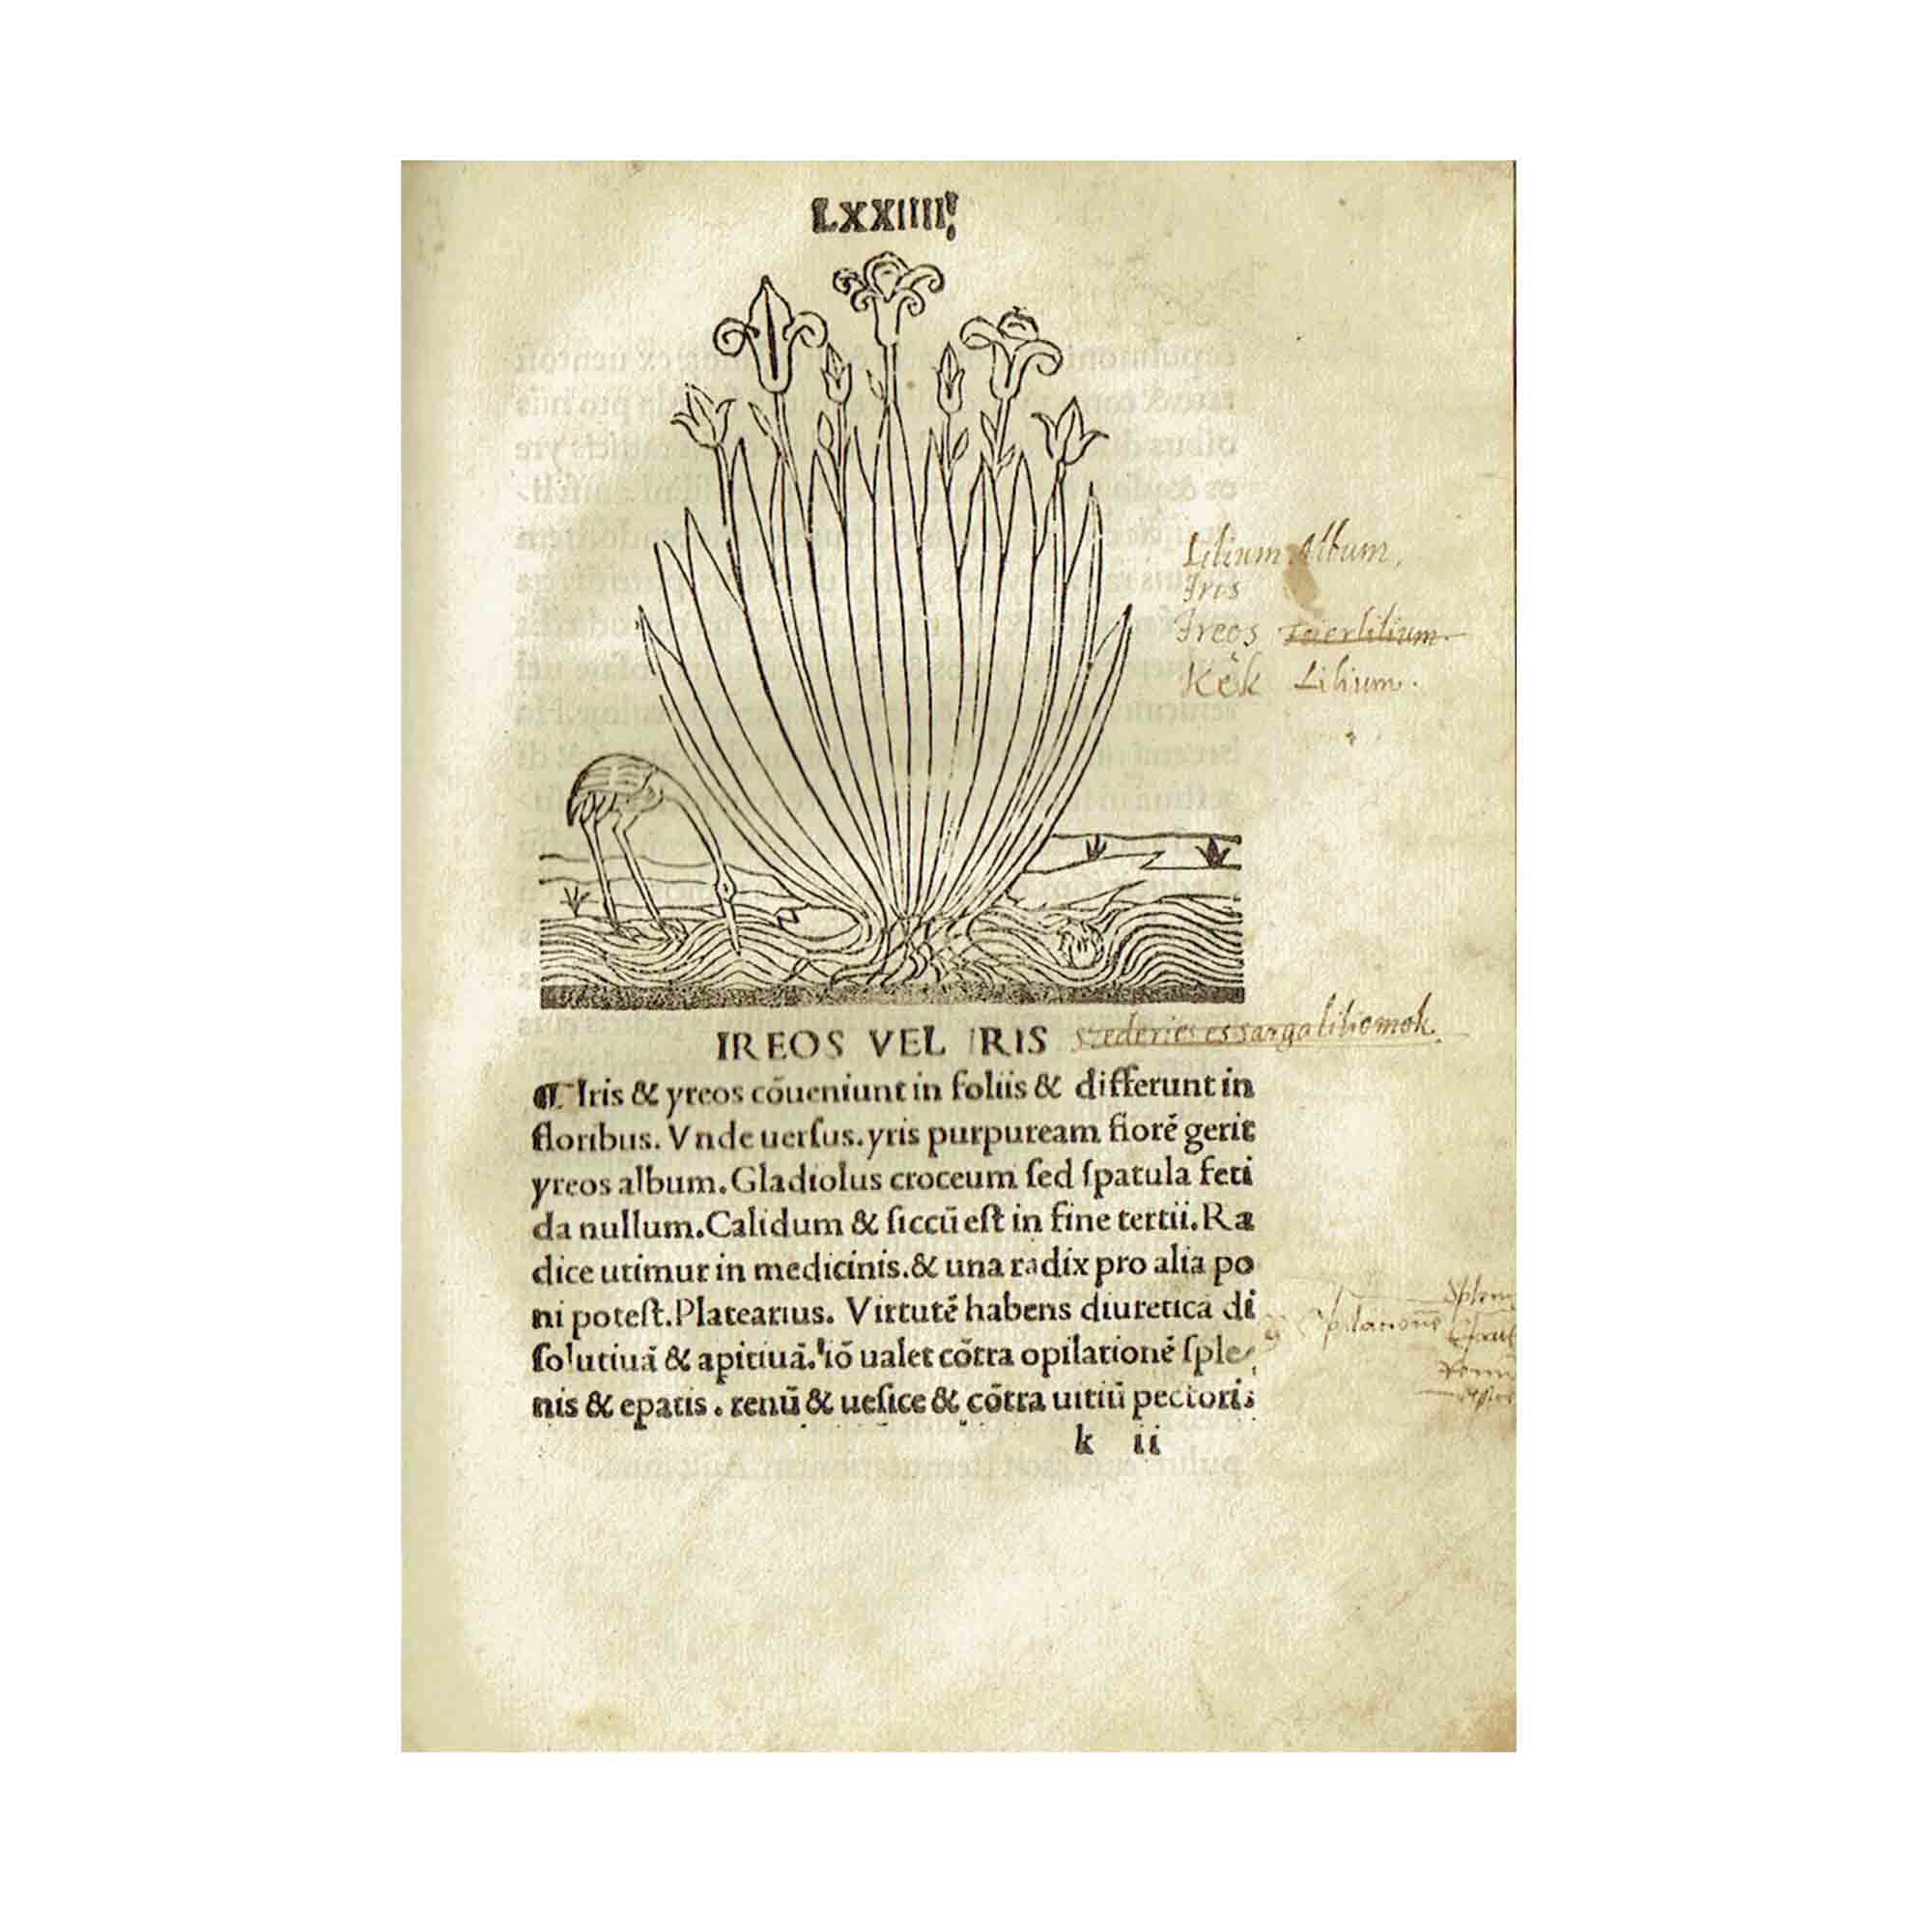 [HERBARIUS LATINUS]. Tractatus de virtutibus herbarum.